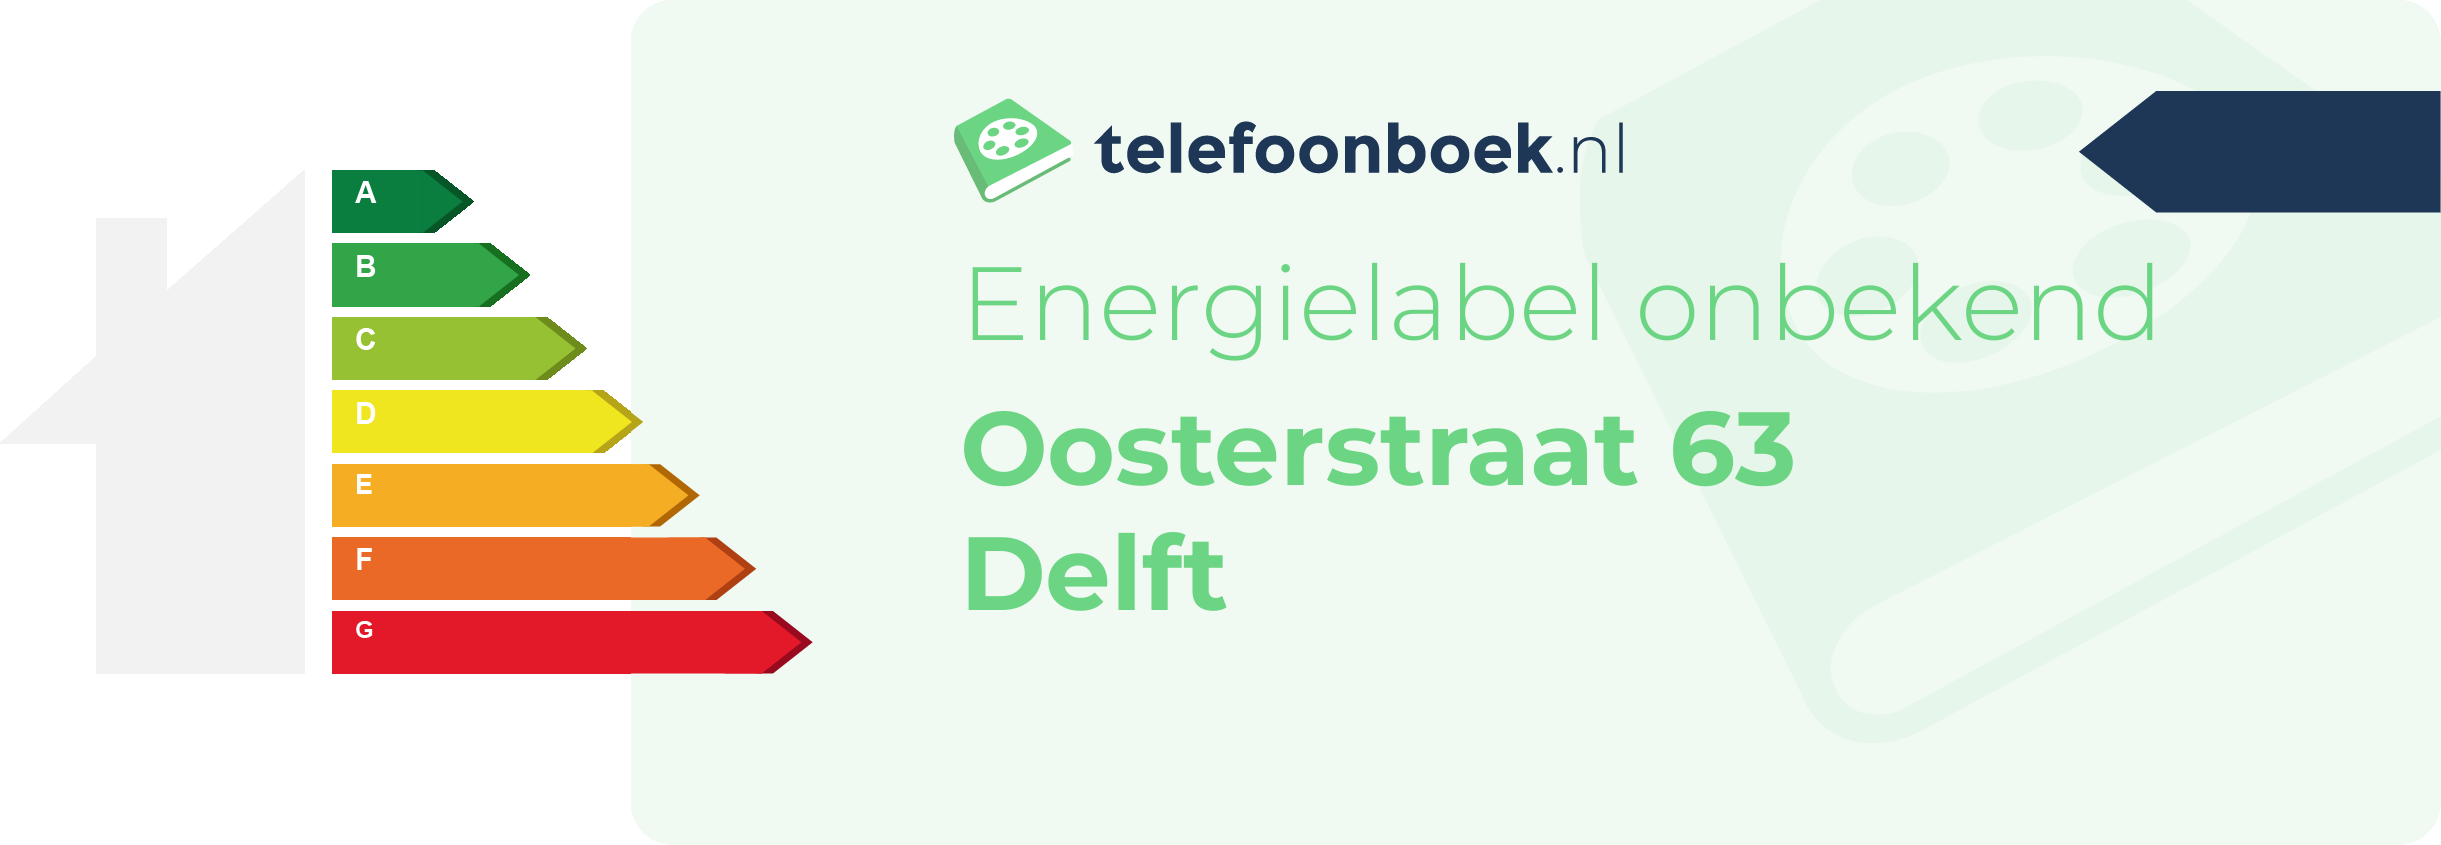 Energielabel Oosterstraat 63 Delft